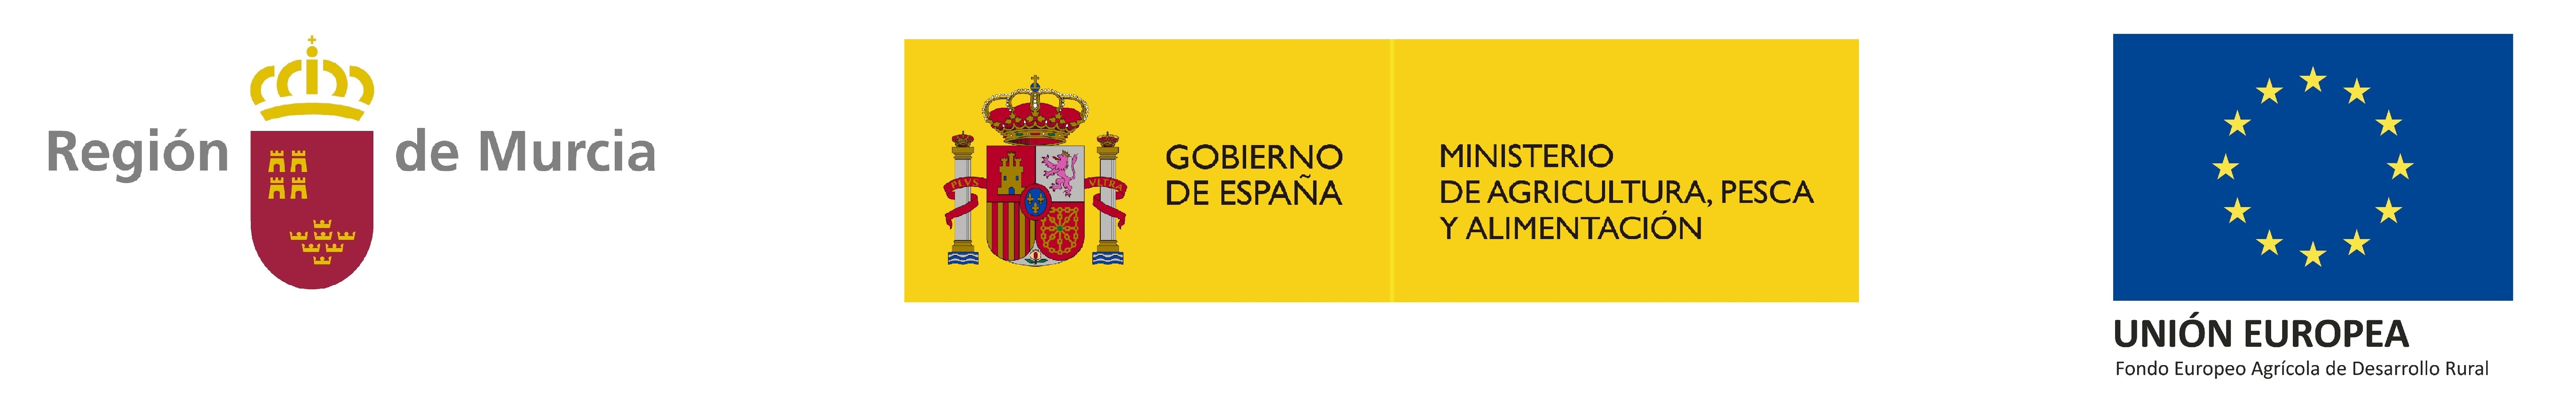 Logotipo Región de Murcia-Ministerio de Agricultura, Pesca y Alimentación-Unión Europea No Web